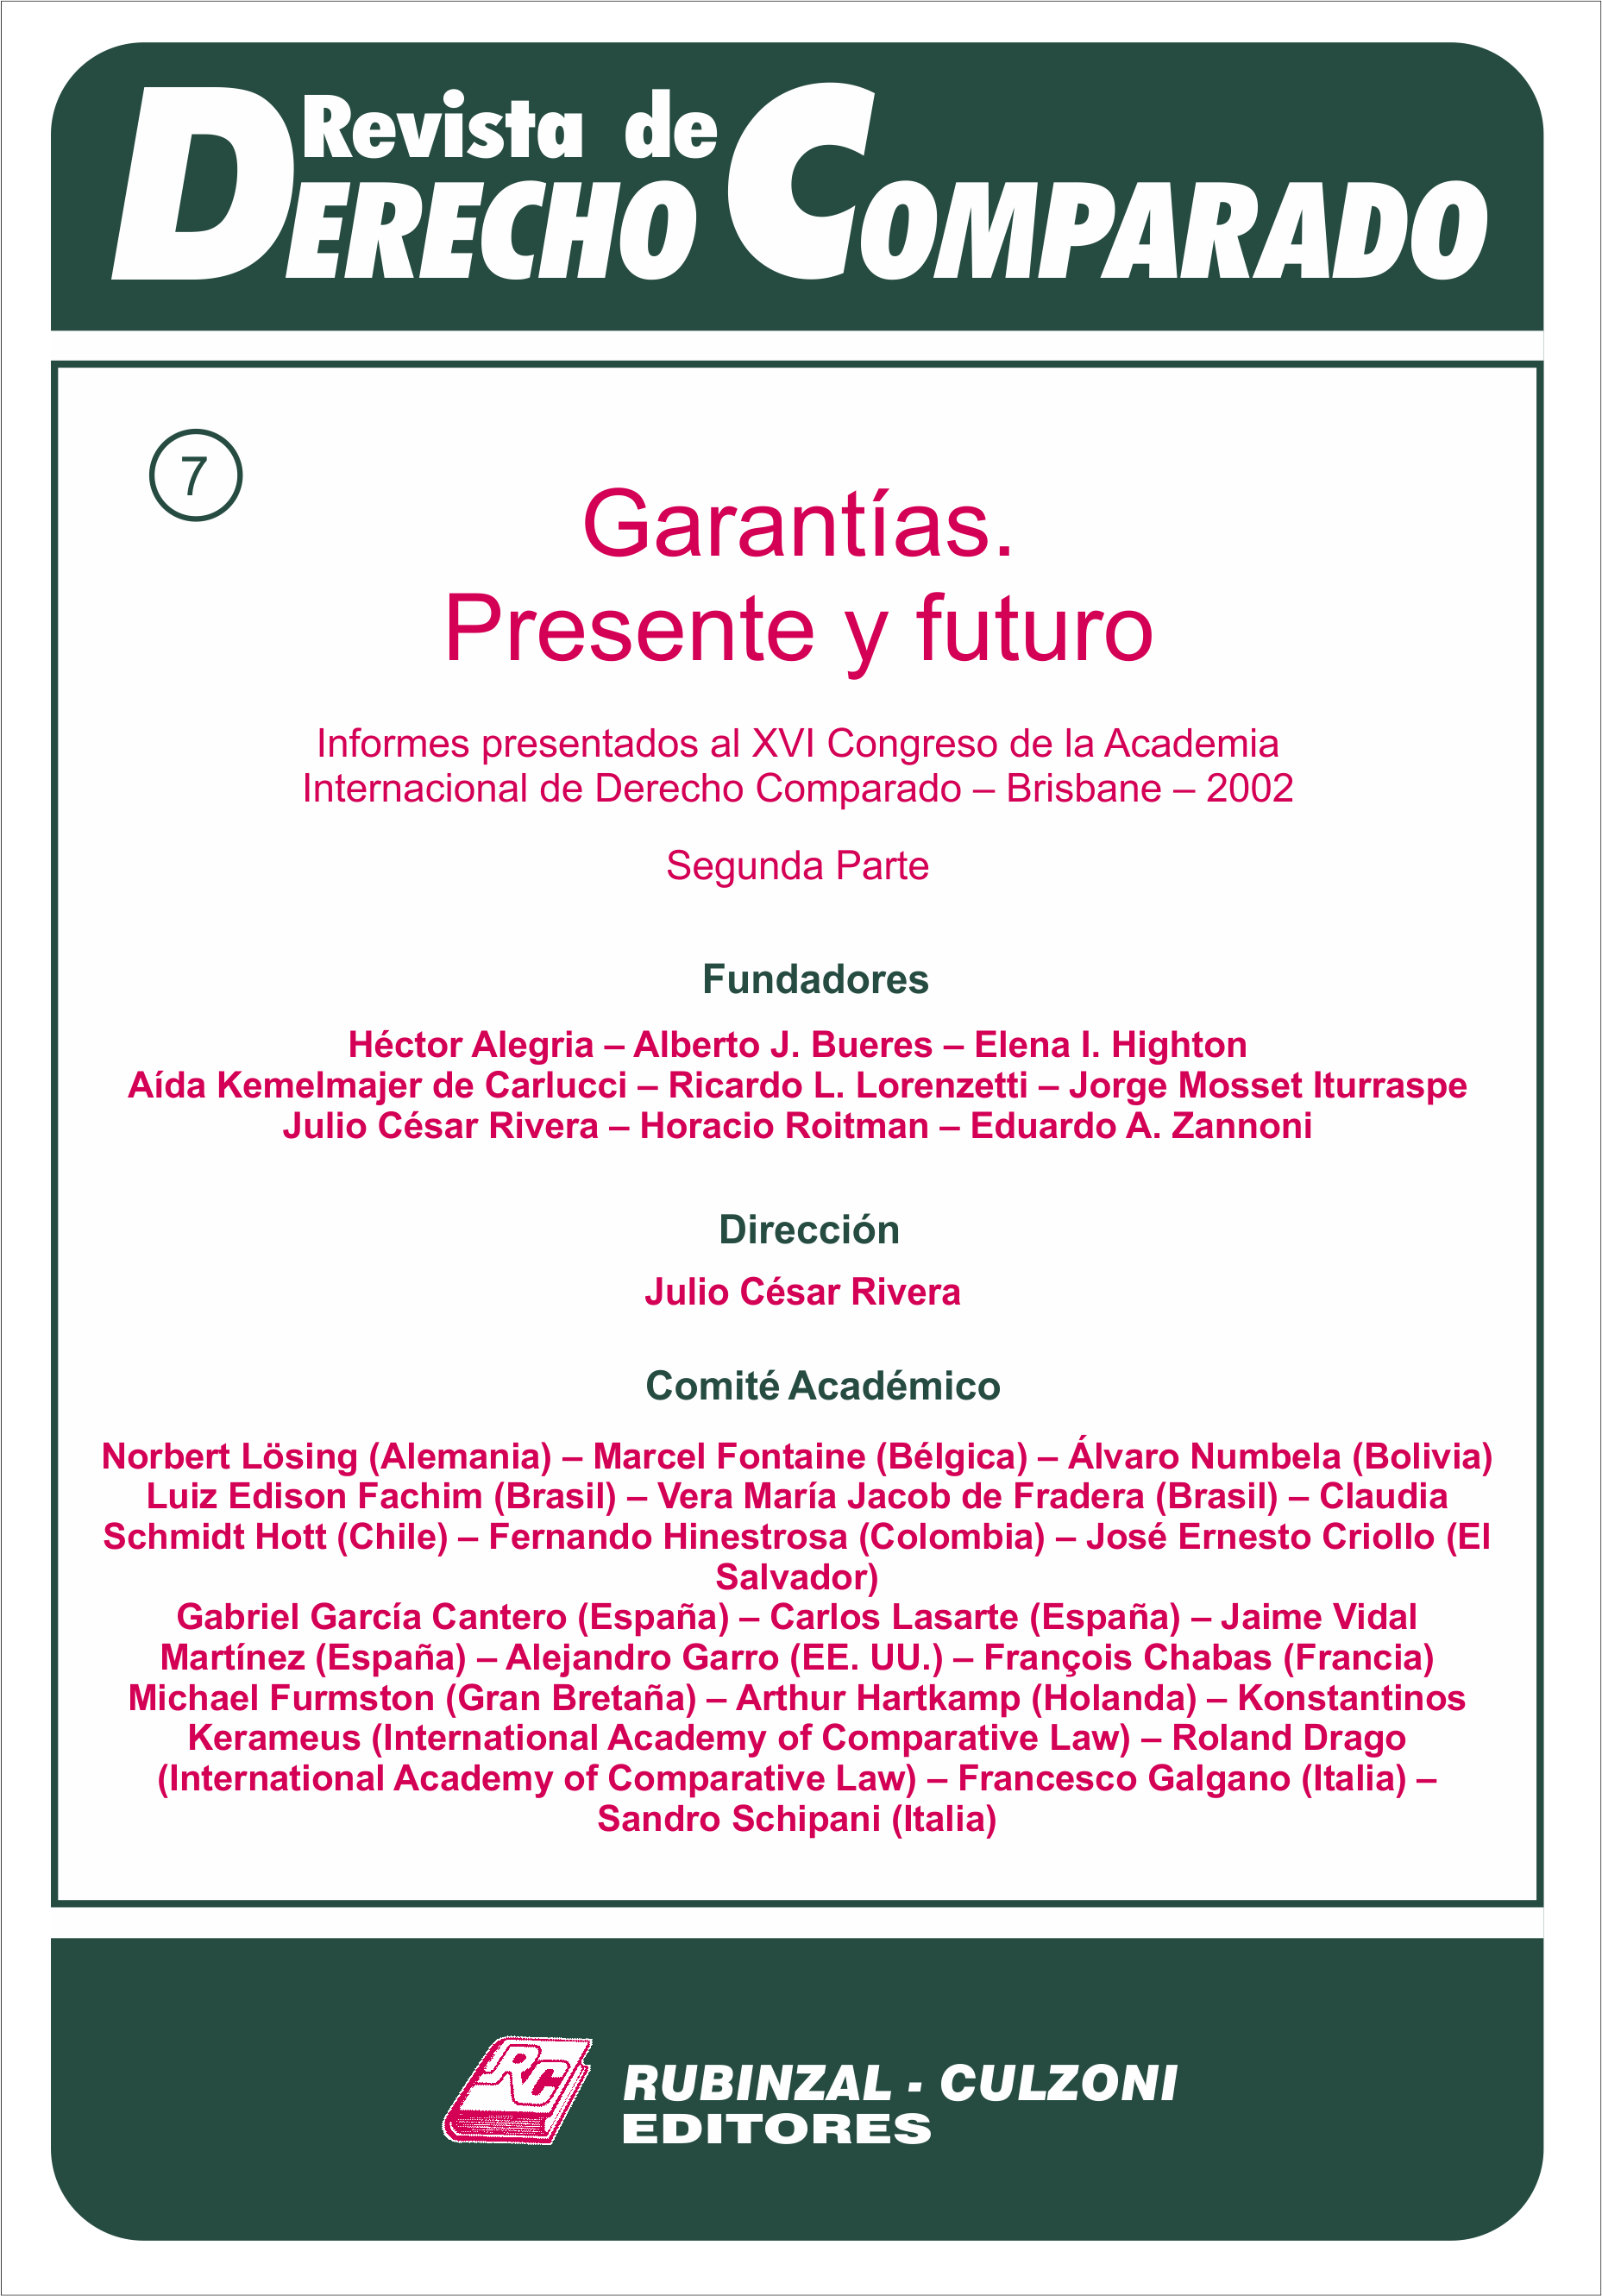 Revista de Derecho Comparado - Doctrina (Garantías, presente y futuro - Segunda parte).